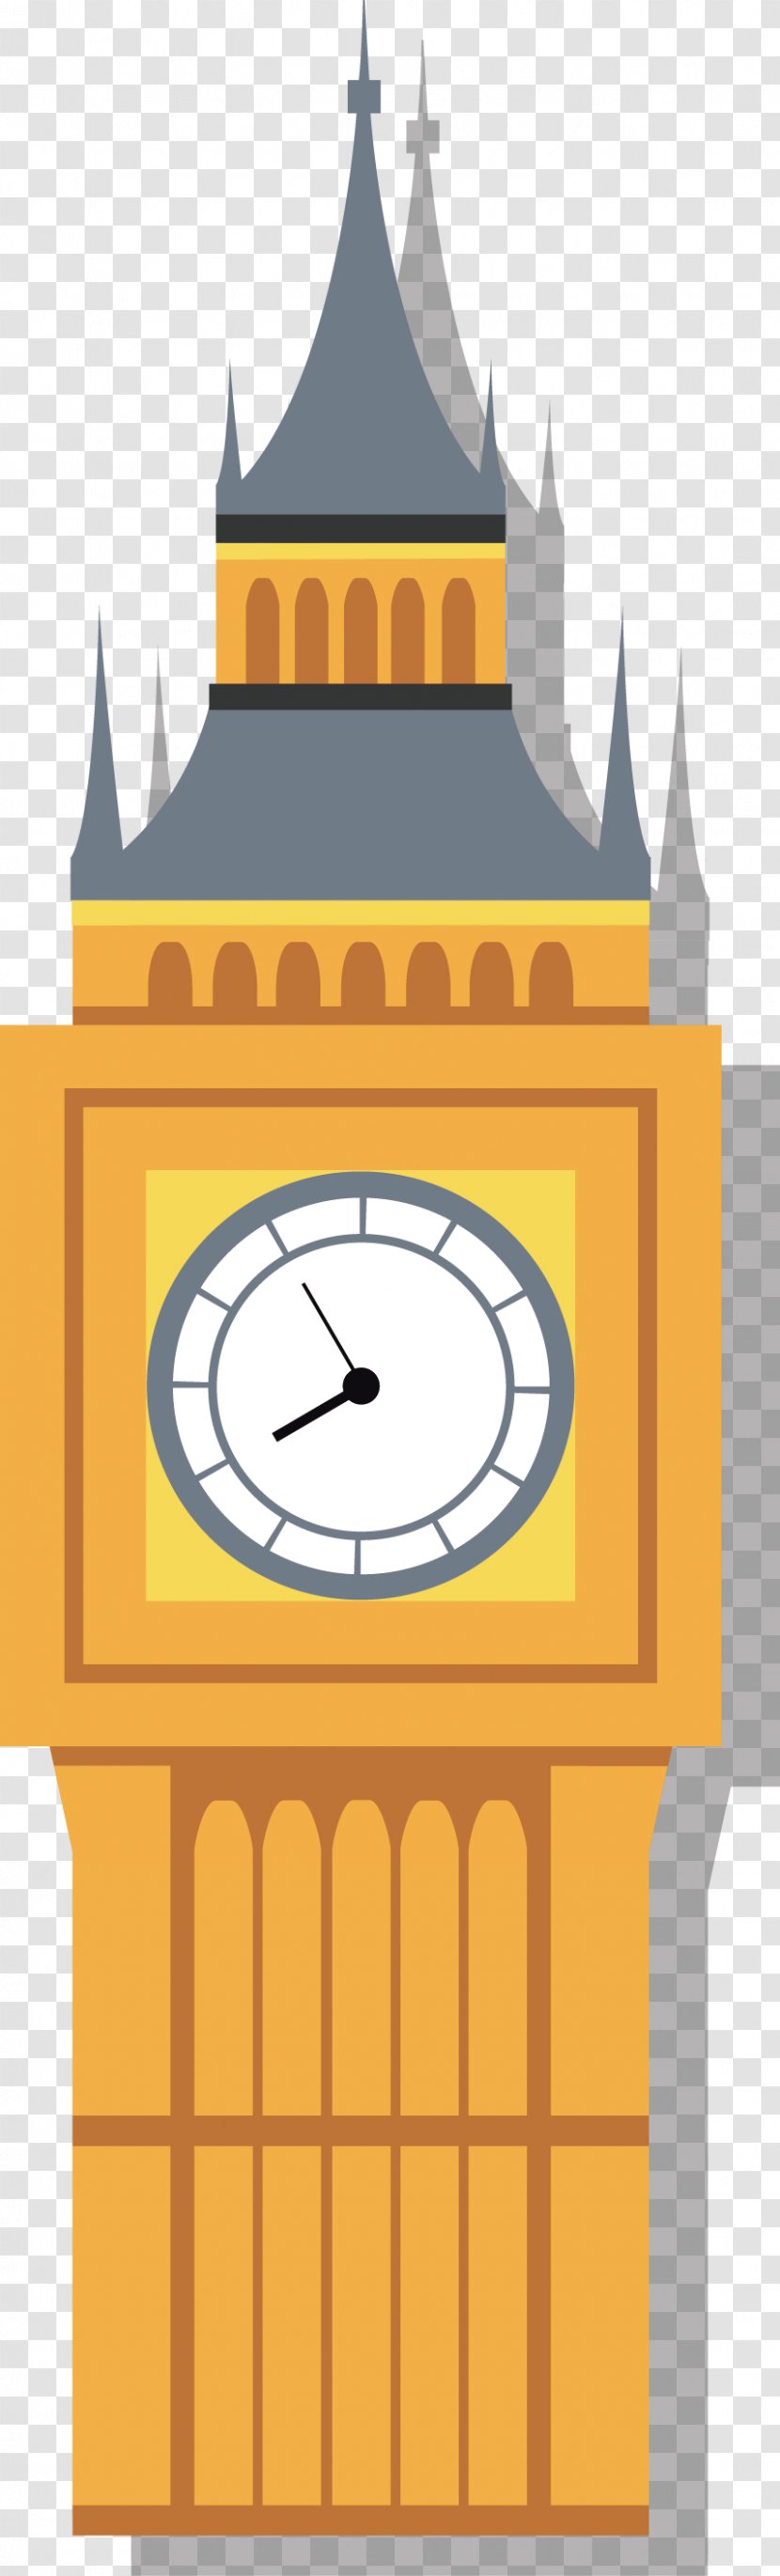 Big Ben London Eye Icon - Clock - Flat Transparent PNG